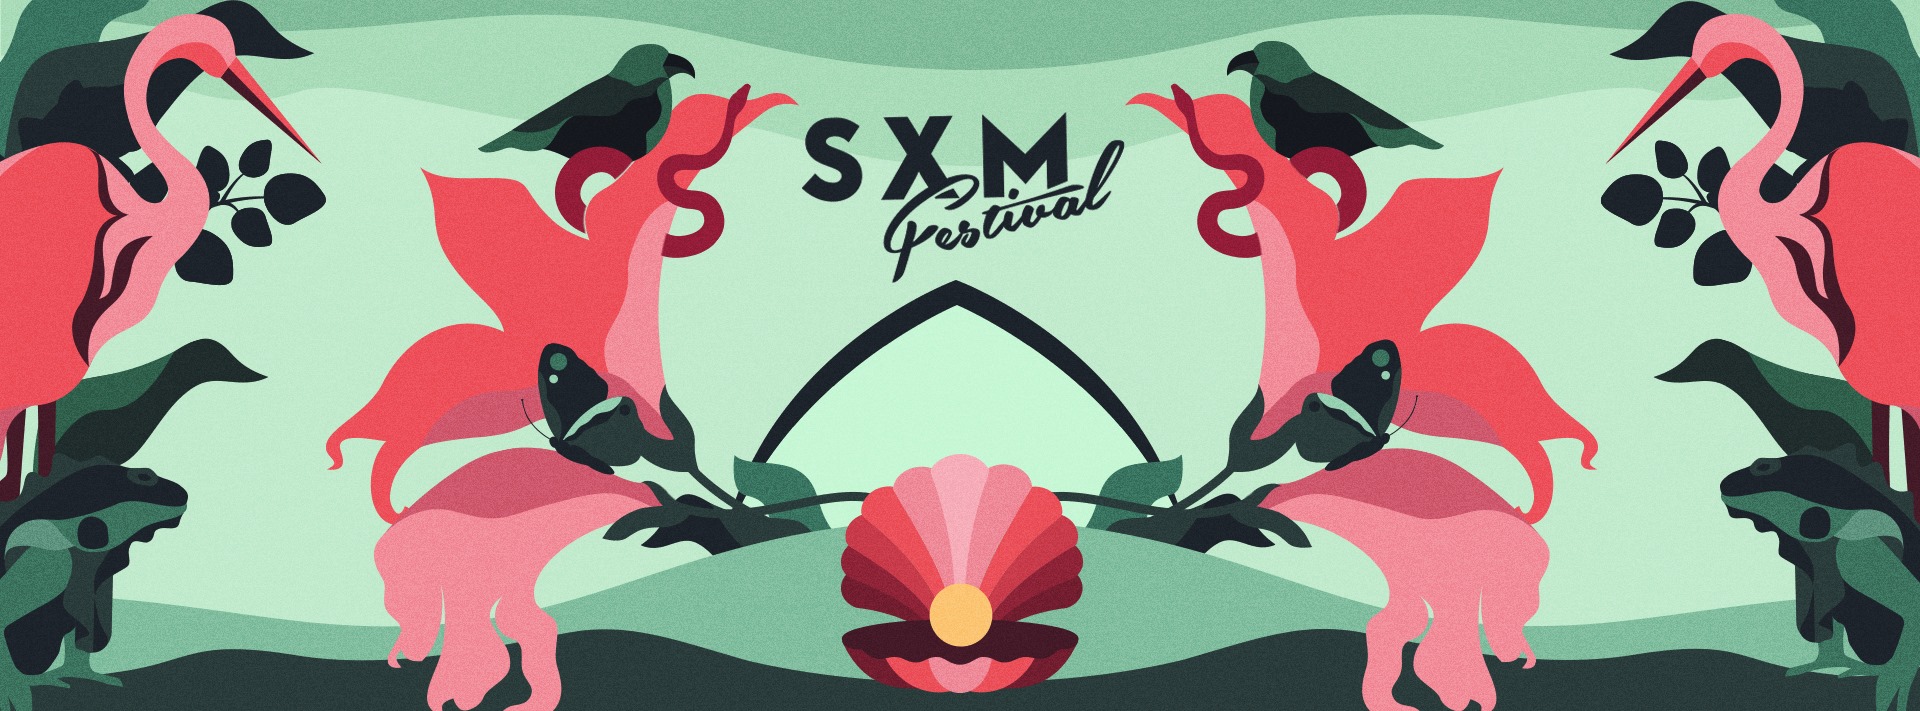 SXM Festival animated cover official 2022 - SXM Festival 2022 - Lineupping.com